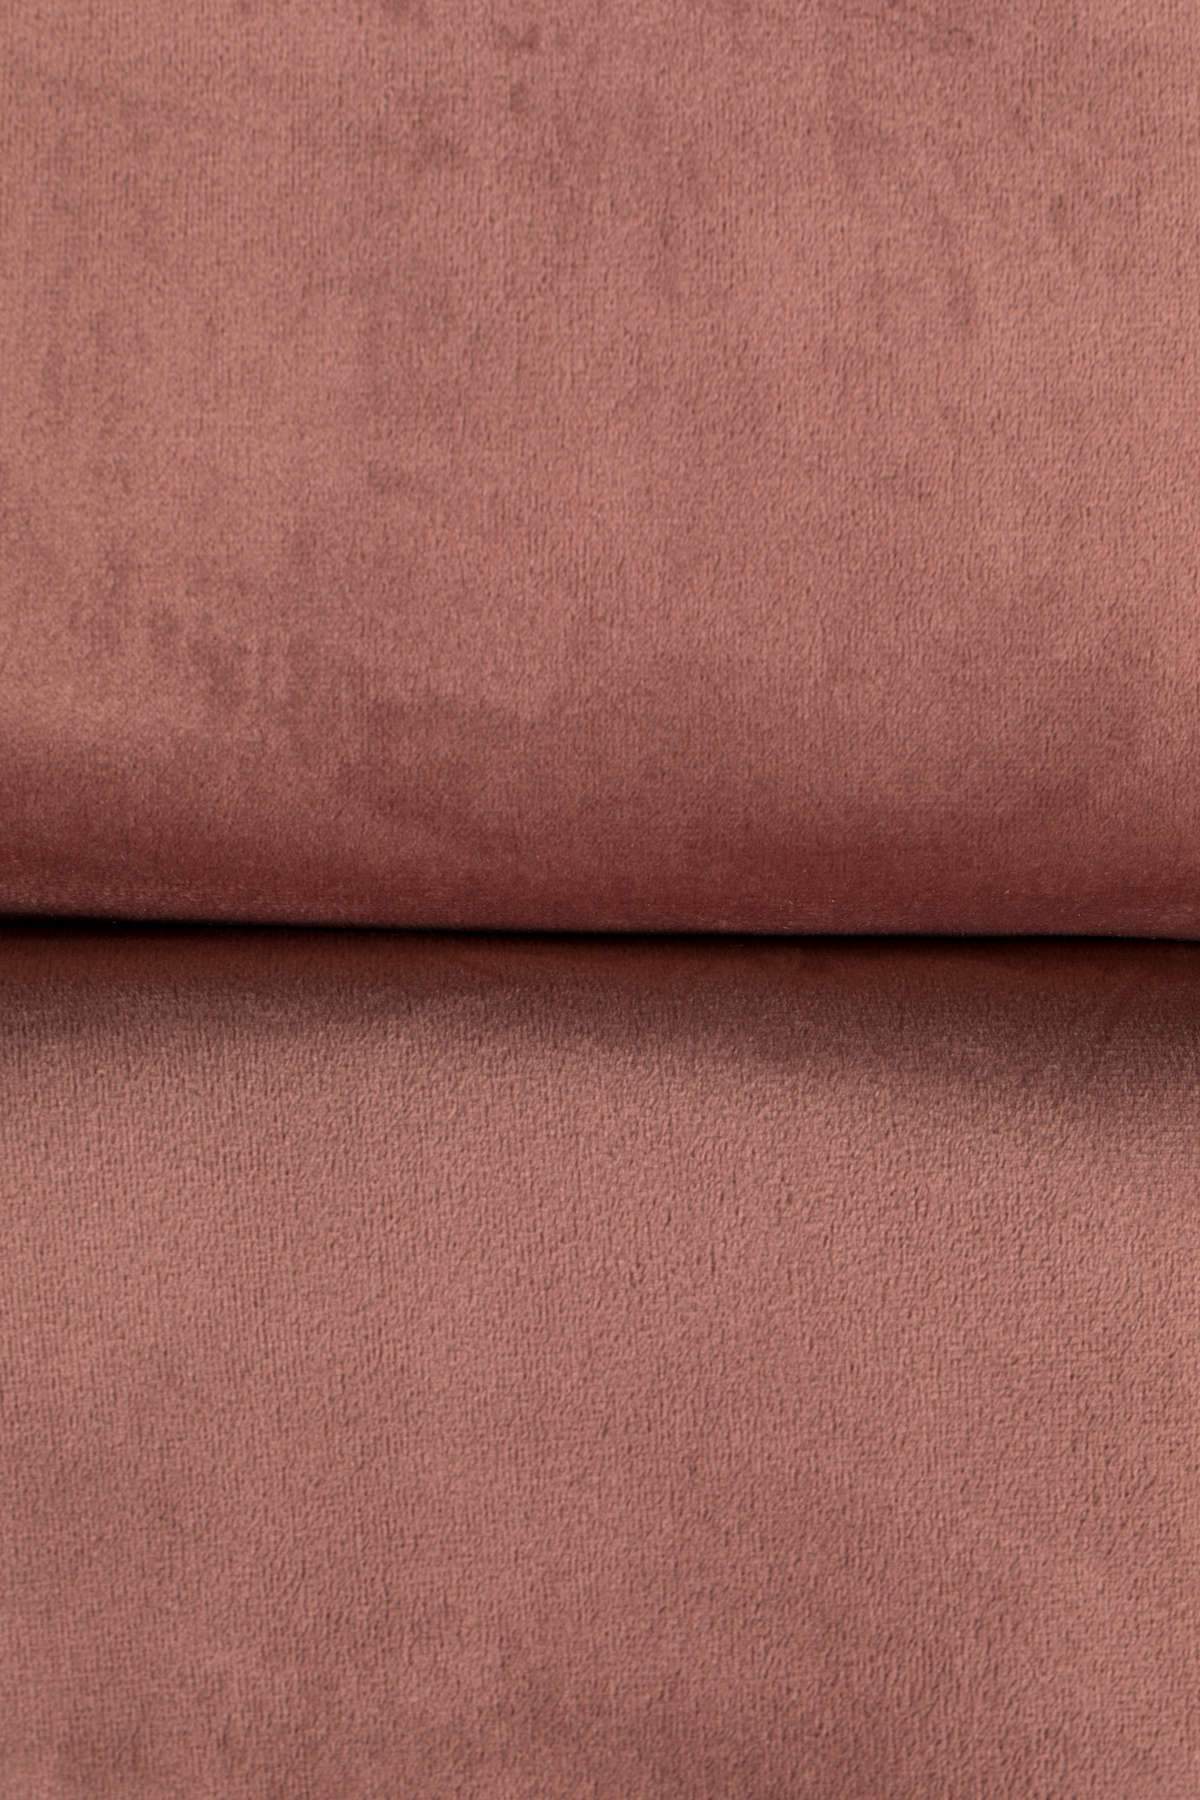 BAR VELVET stool pink, Dutchbone, Eye on Design